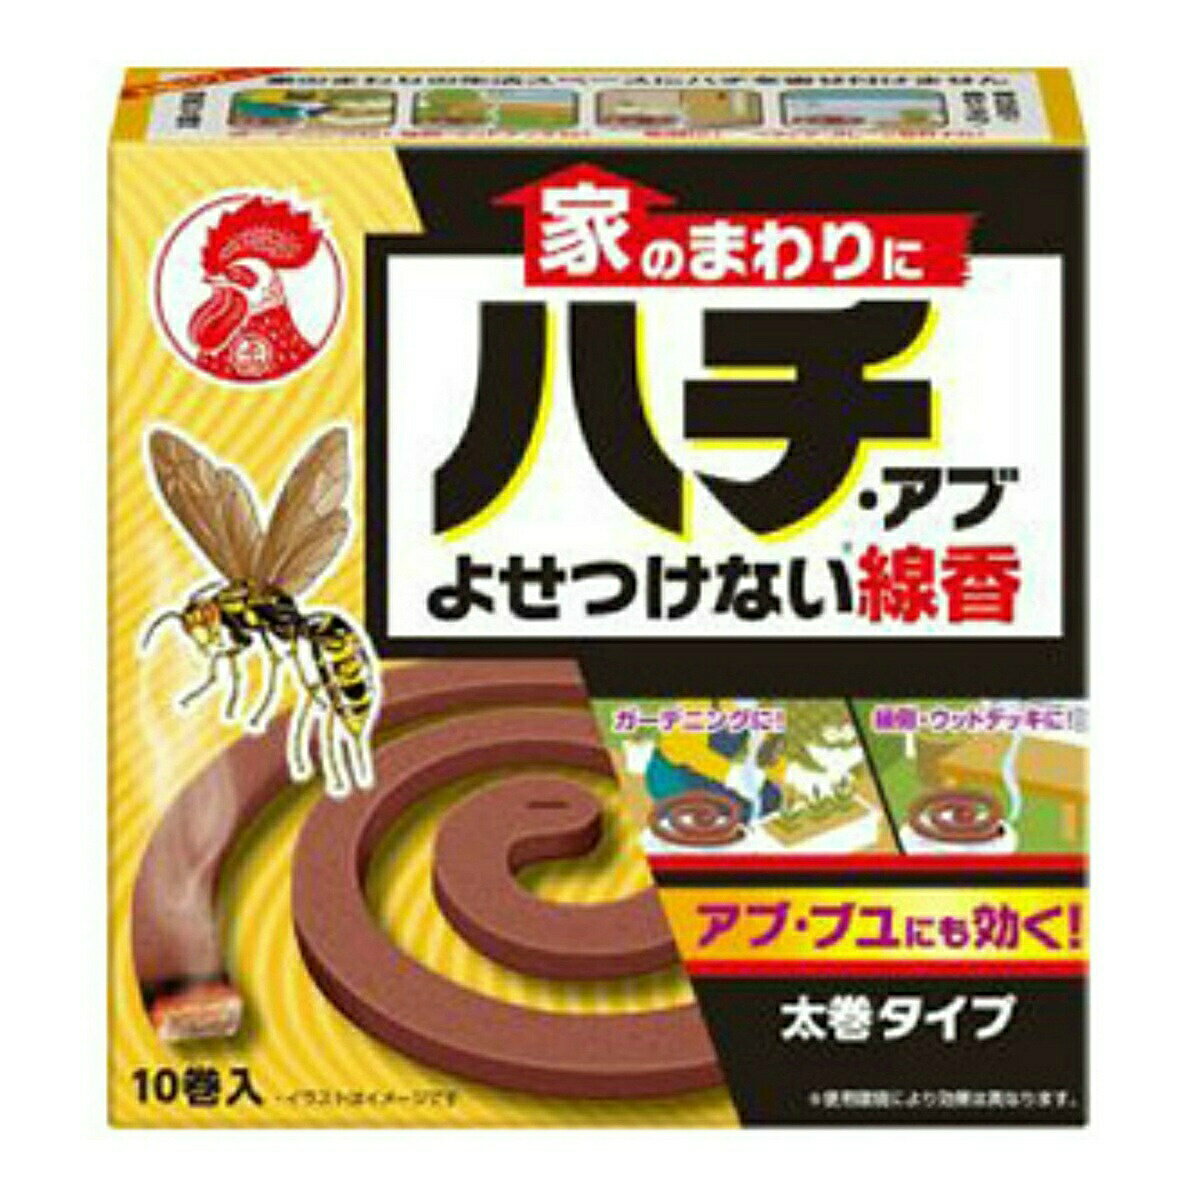 【送料込】大日本除虫菊 金鳥 家のまわりにハチ アブ よせつけない 線香 10巻入 1個